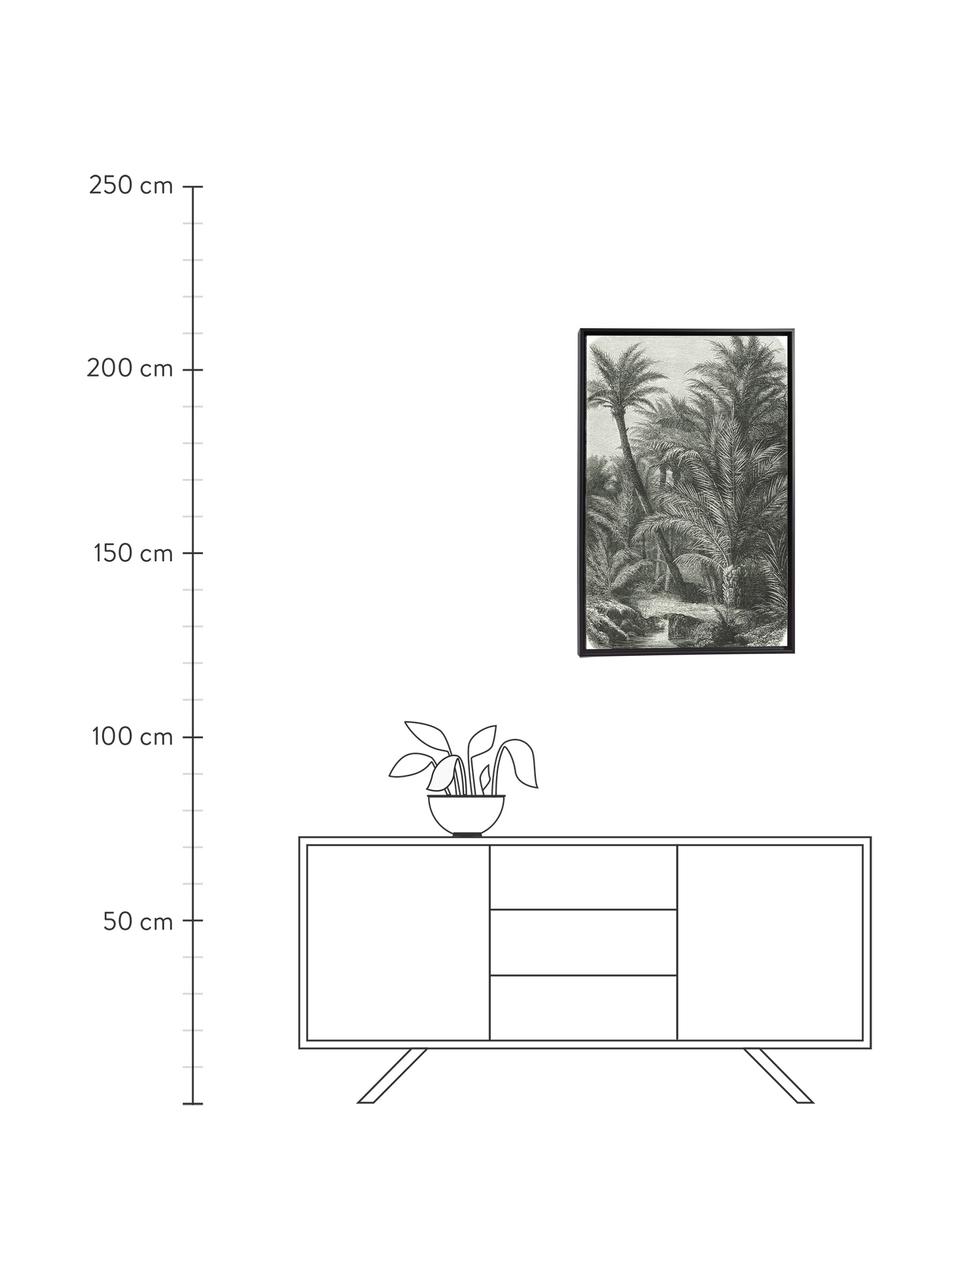 Gerahmter Digitaldruck Bamidele, Rahmen: Mitteldichte Holzfaserpla, Bild: Leinwand, Grün, Beige, B 60 x H 90 cm